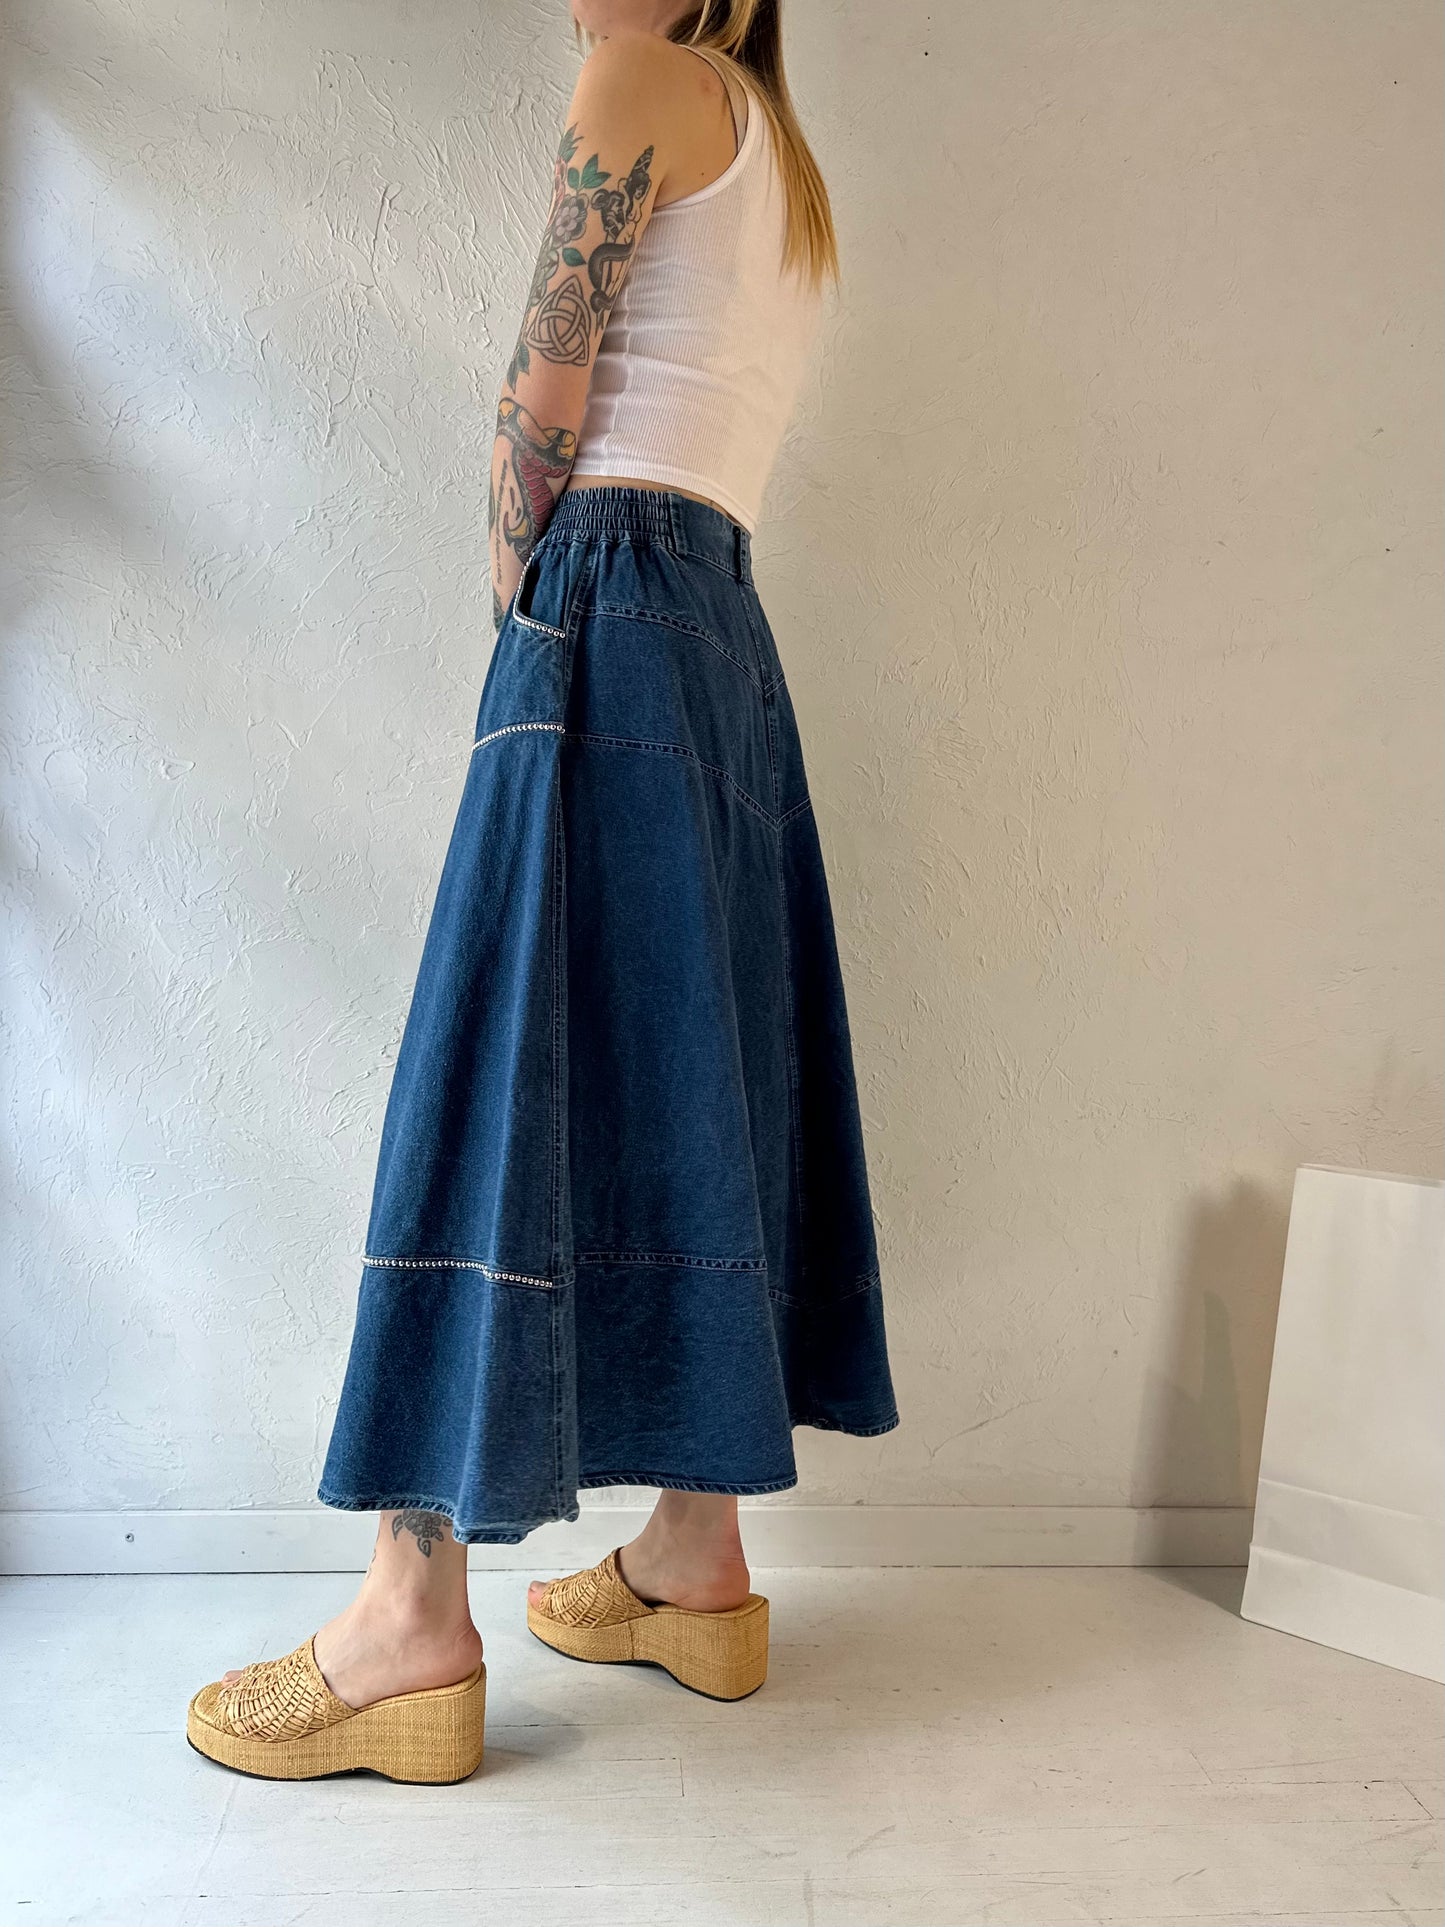 90s 'Jazzino' Denim Skirt / Small